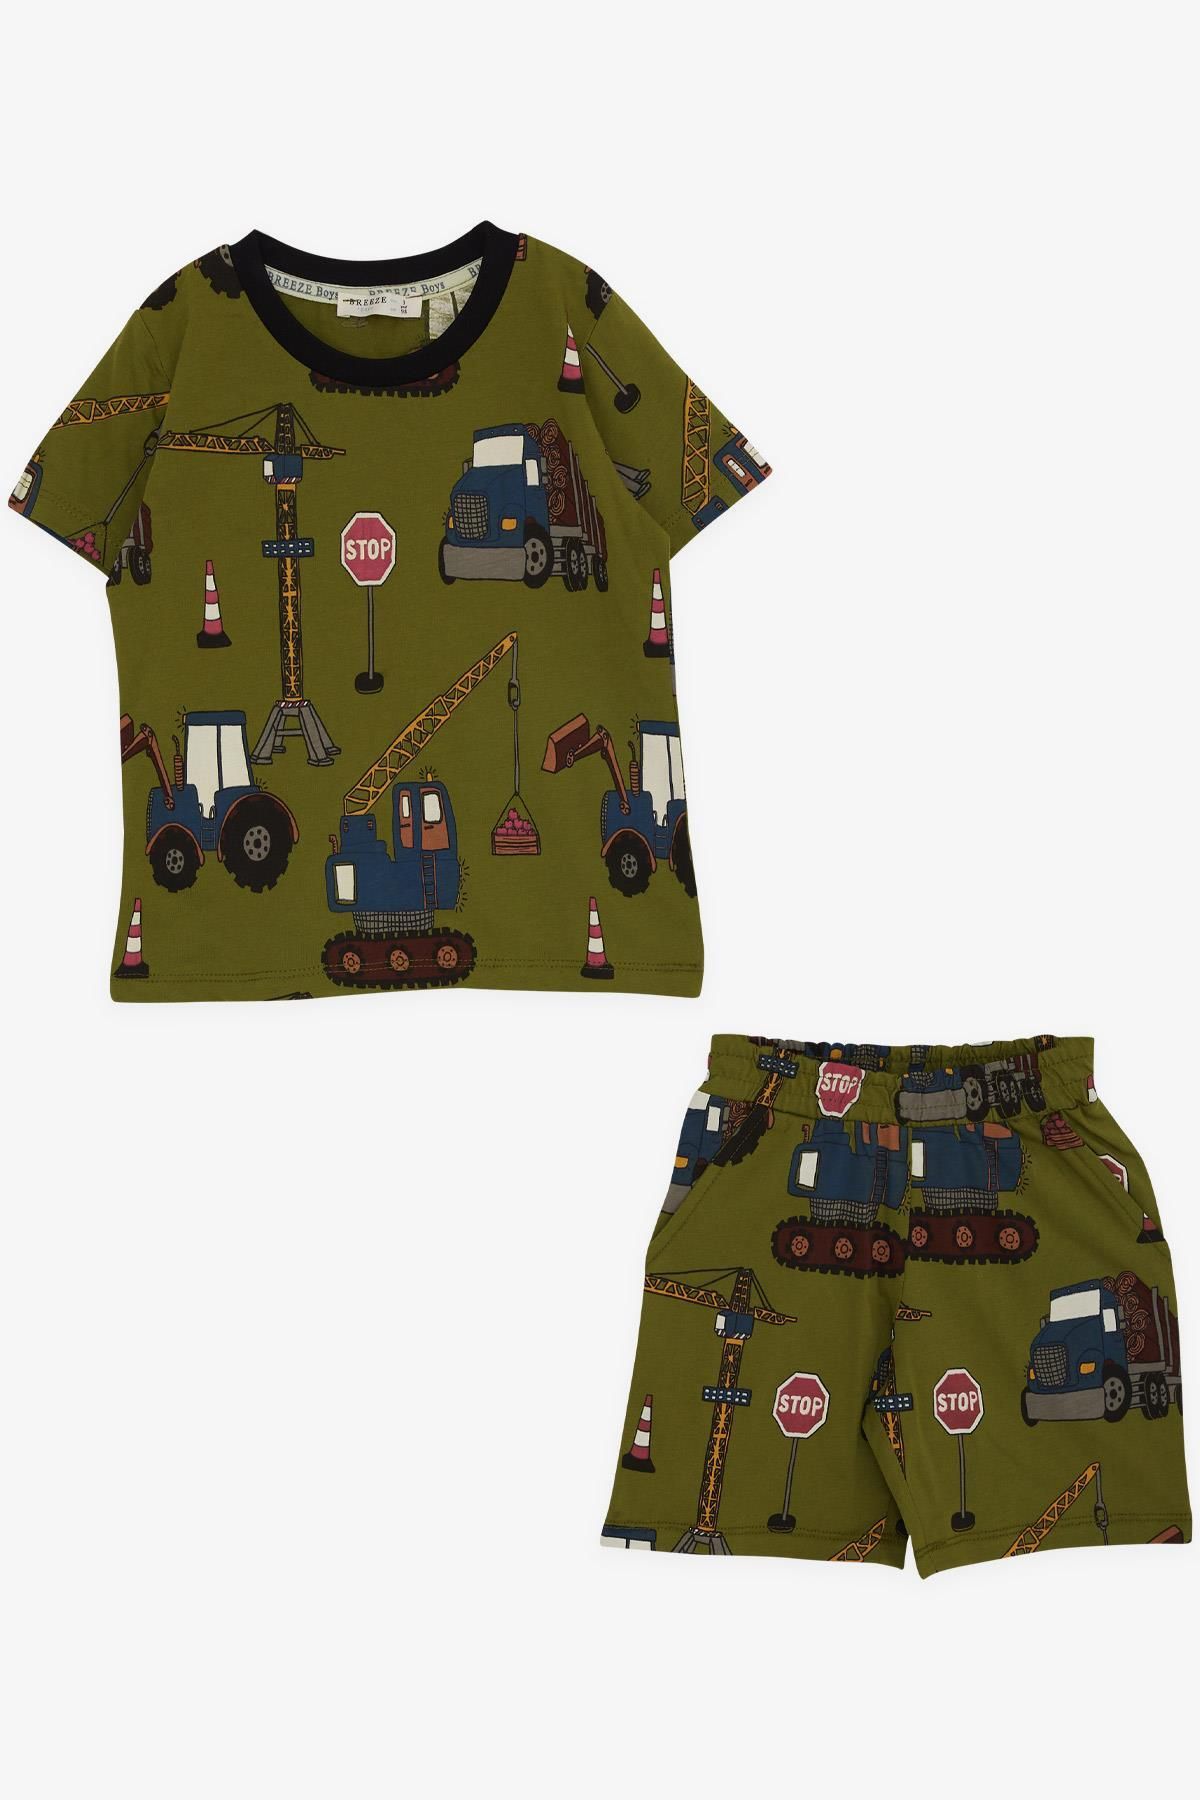 Breeze Erkek Çocuk Şortlu Pijama Takımı Iş Makinesi Desenli 2-6 Yaş, Haki Yeşil